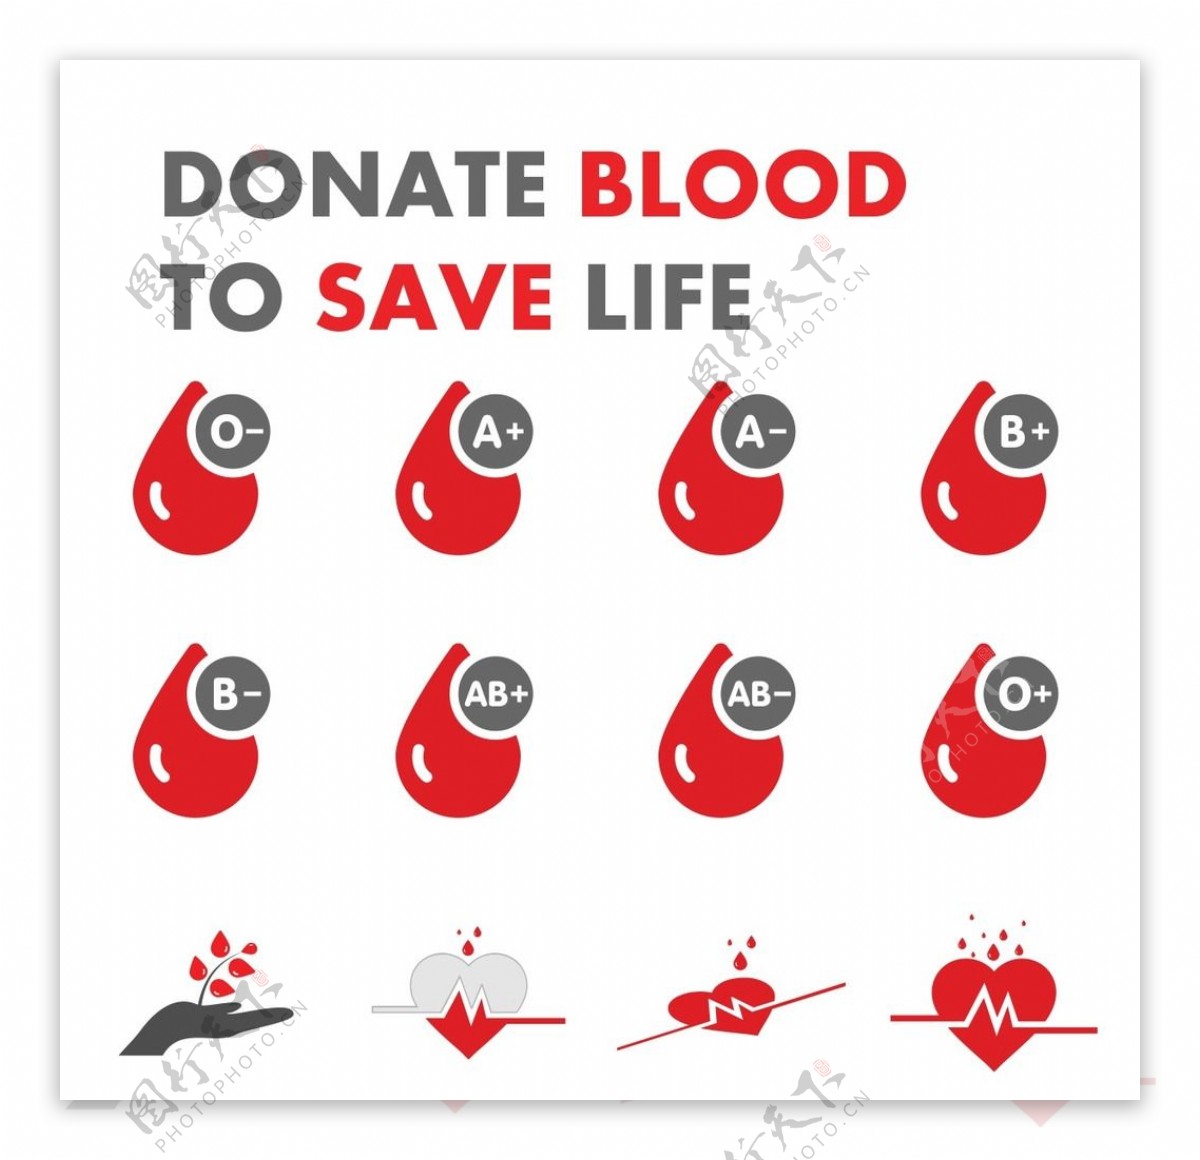 献血拯救生命